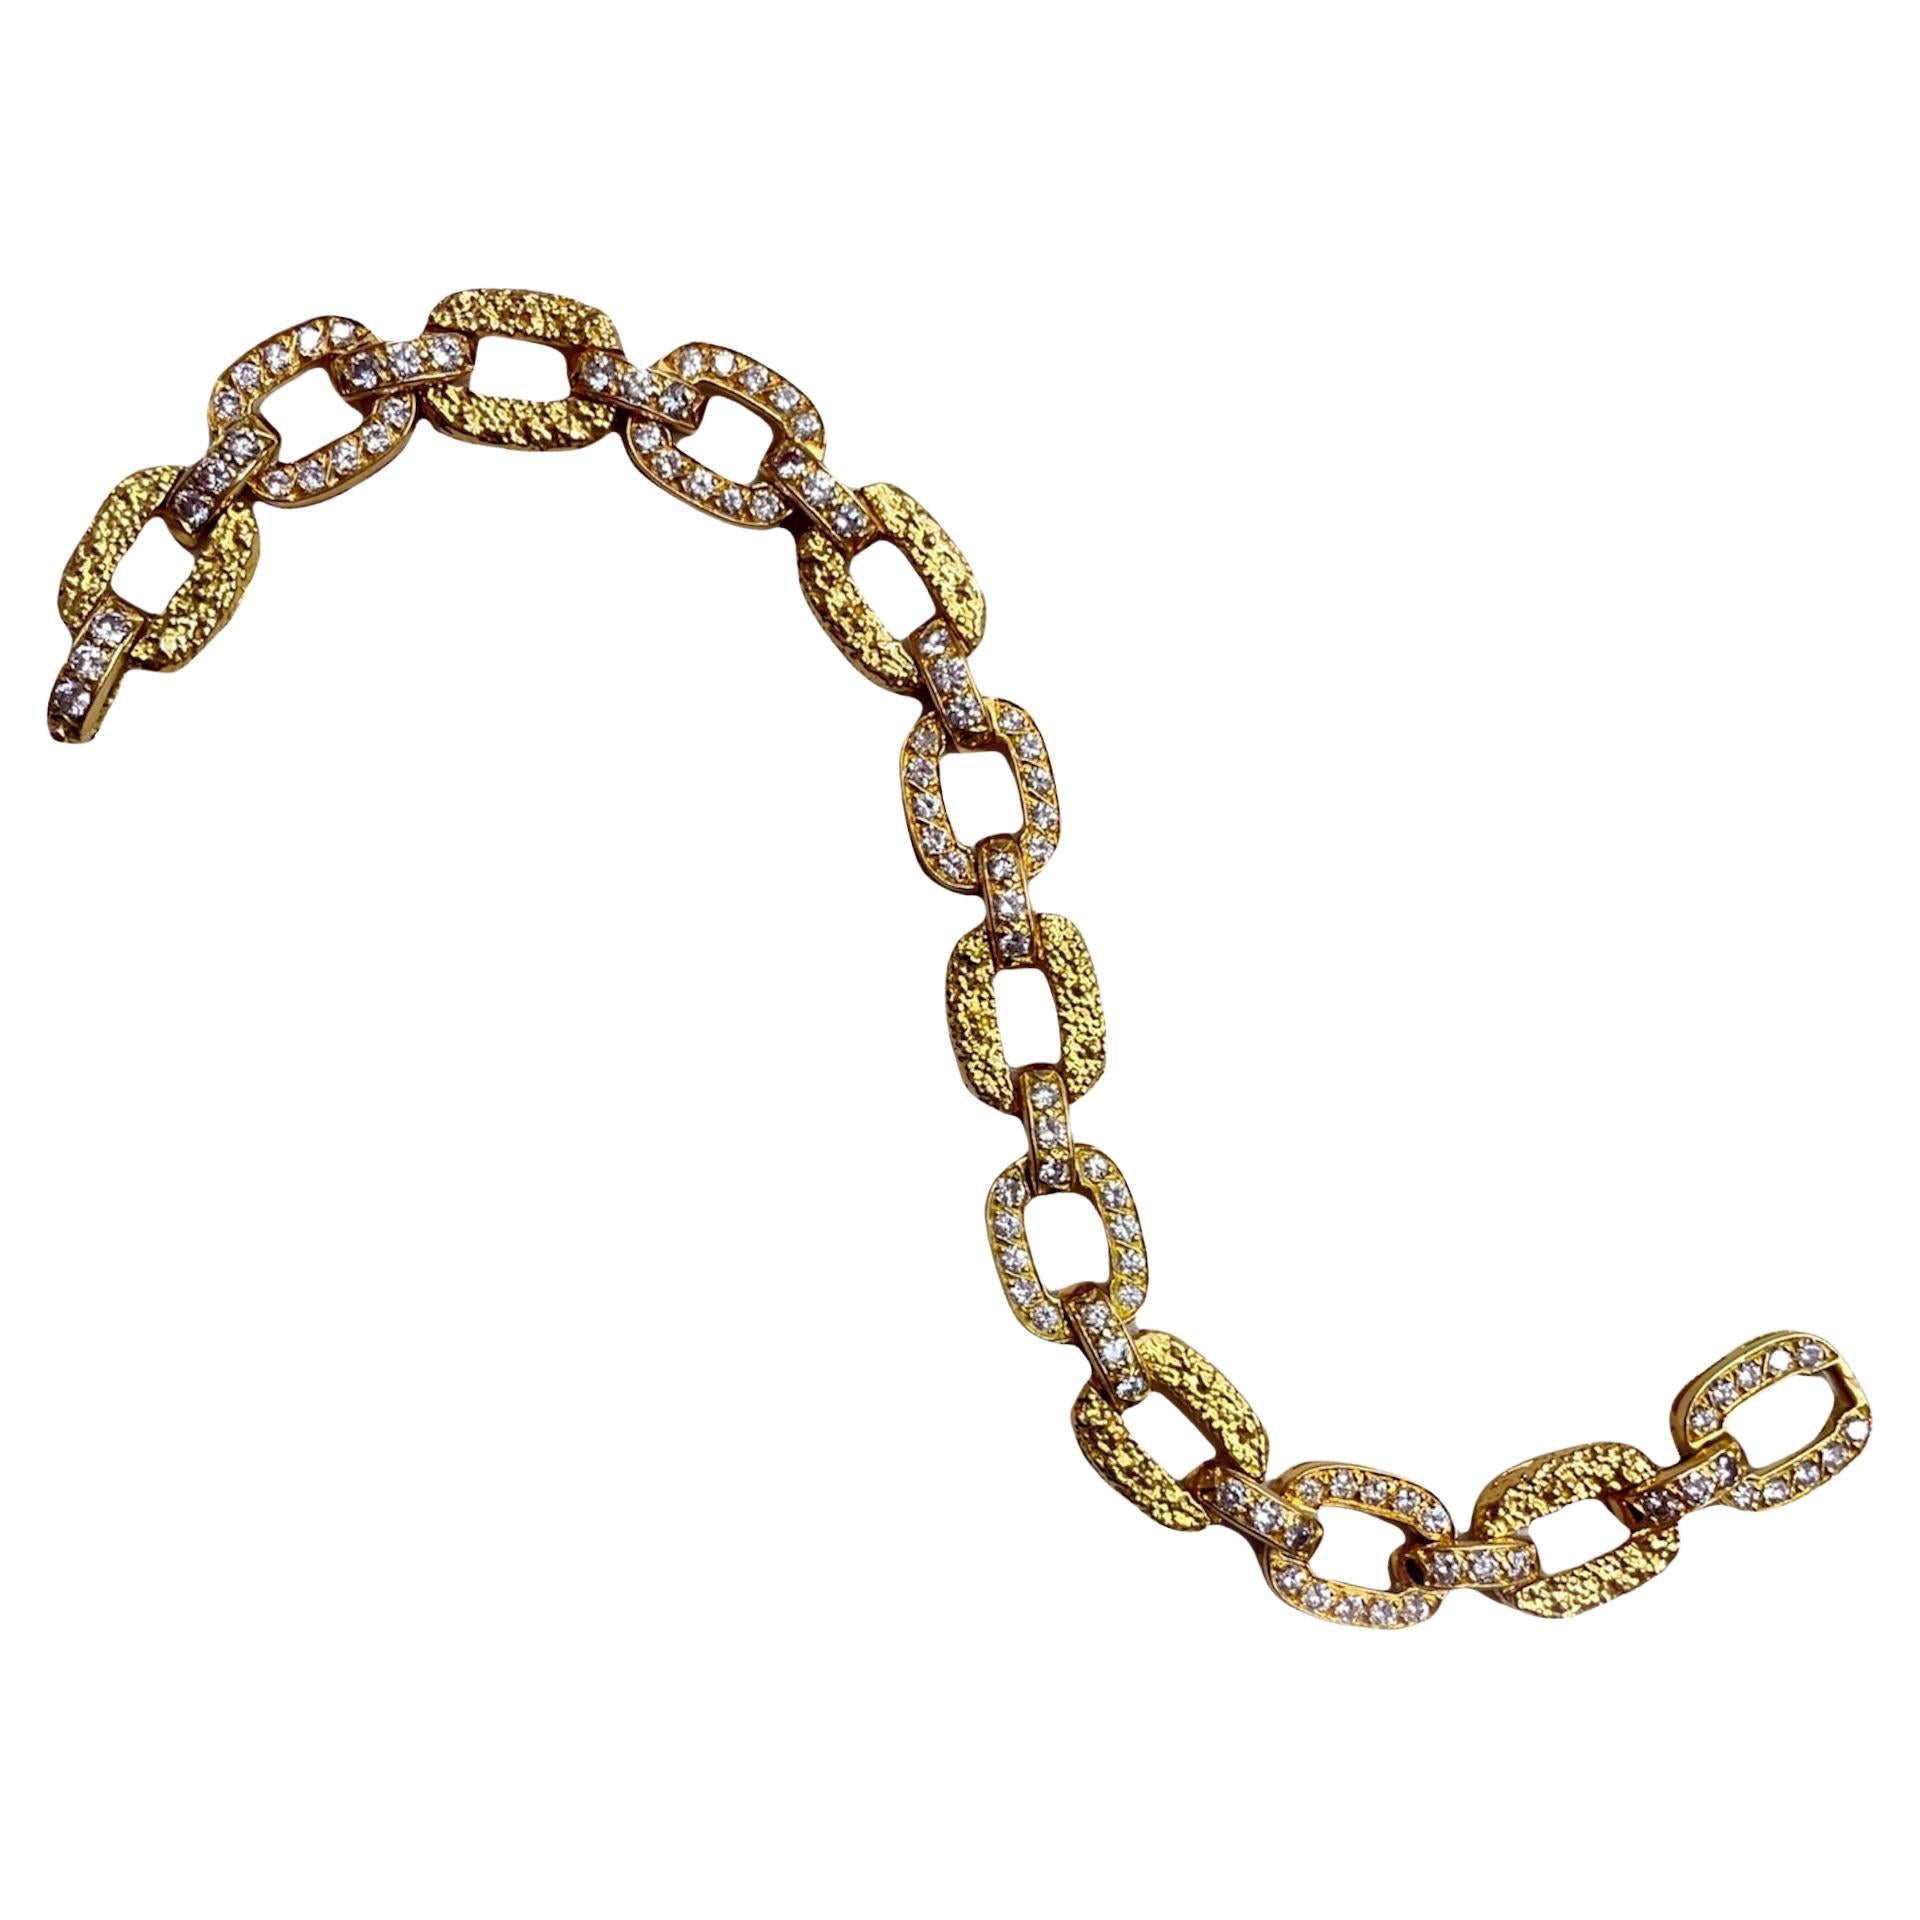 Van Cleef und Arpels Diamantarmband aus 18k Gold, ca. 1940er Jahre

Ein sehr schickes und gut tragbares Gliederarmband aus Diamanten und Gold von Van Cleef & Arpels. Das Armband besteht abwechselnd aus Diamantgliedern (ca. 7 Karat) und Gliedern aus